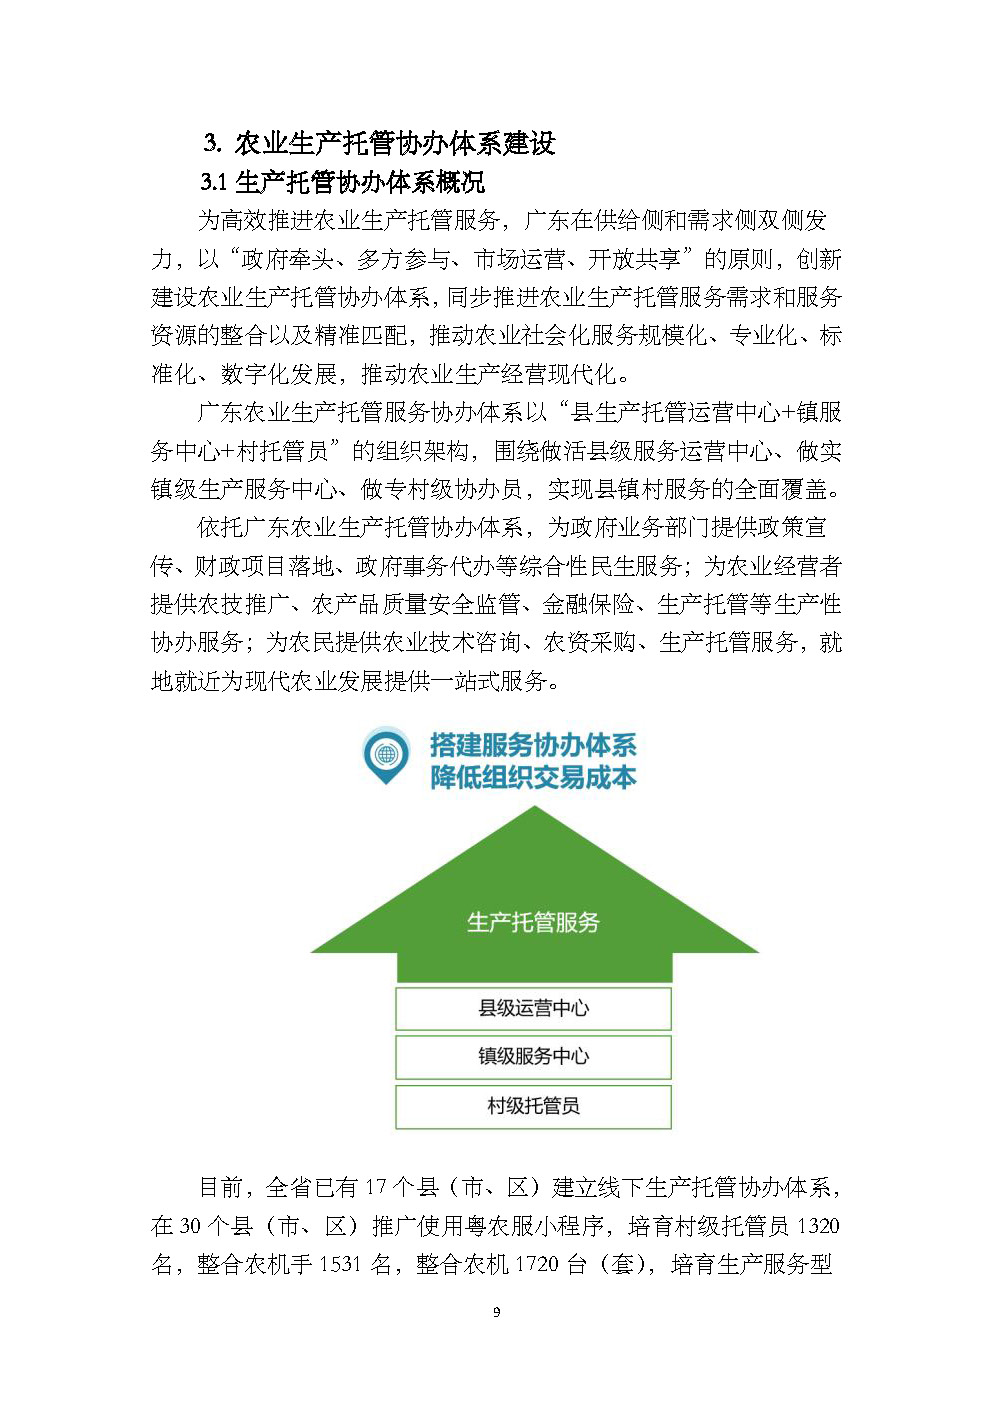 1.广东省农业生产托管服务工作手册_页面_11.jpg